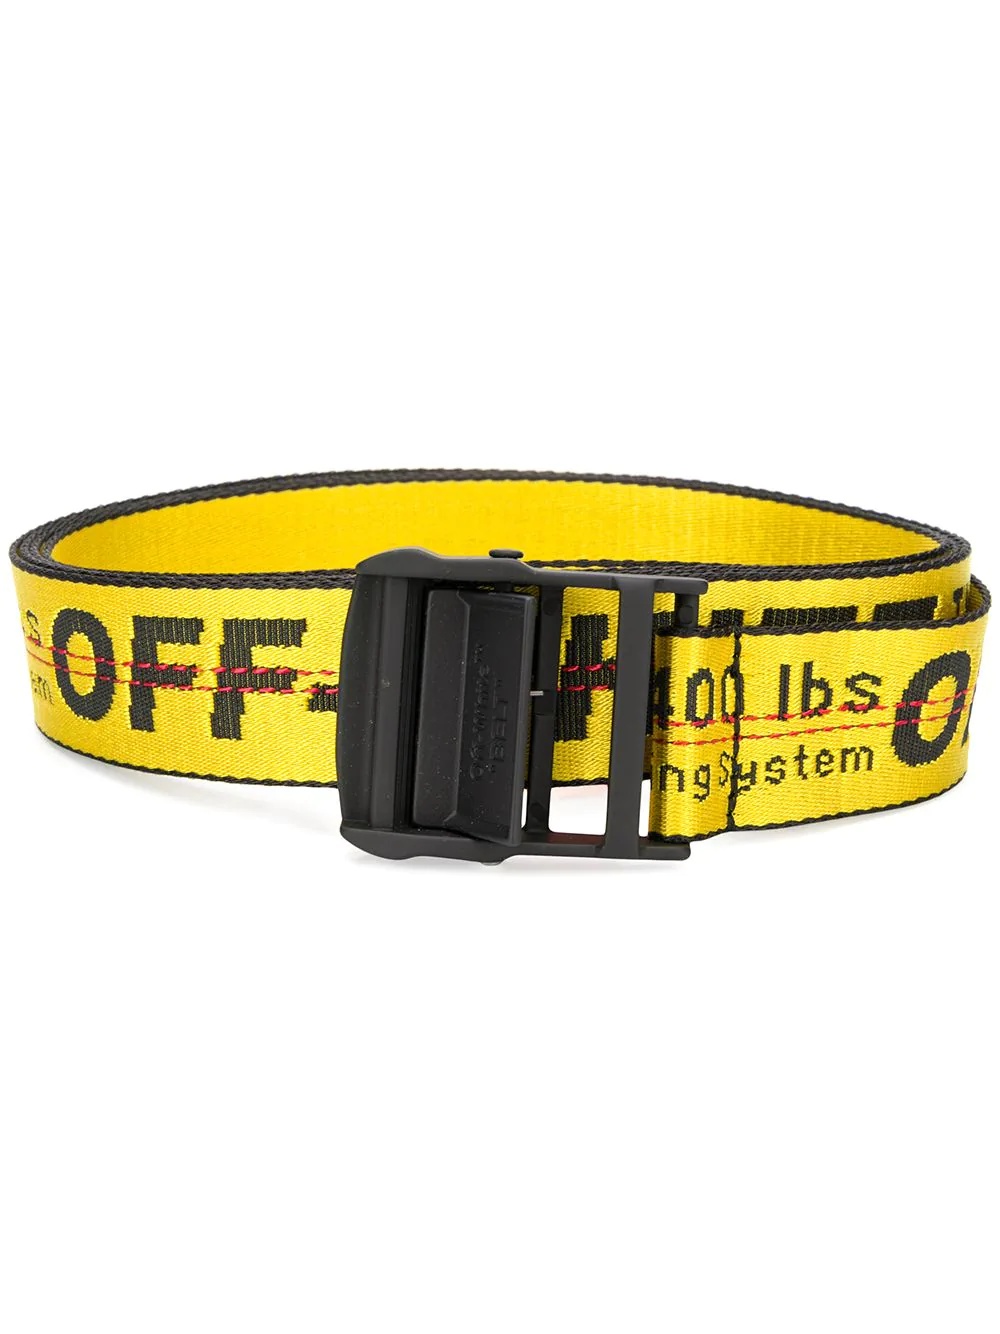 industrial buckle belt - 1